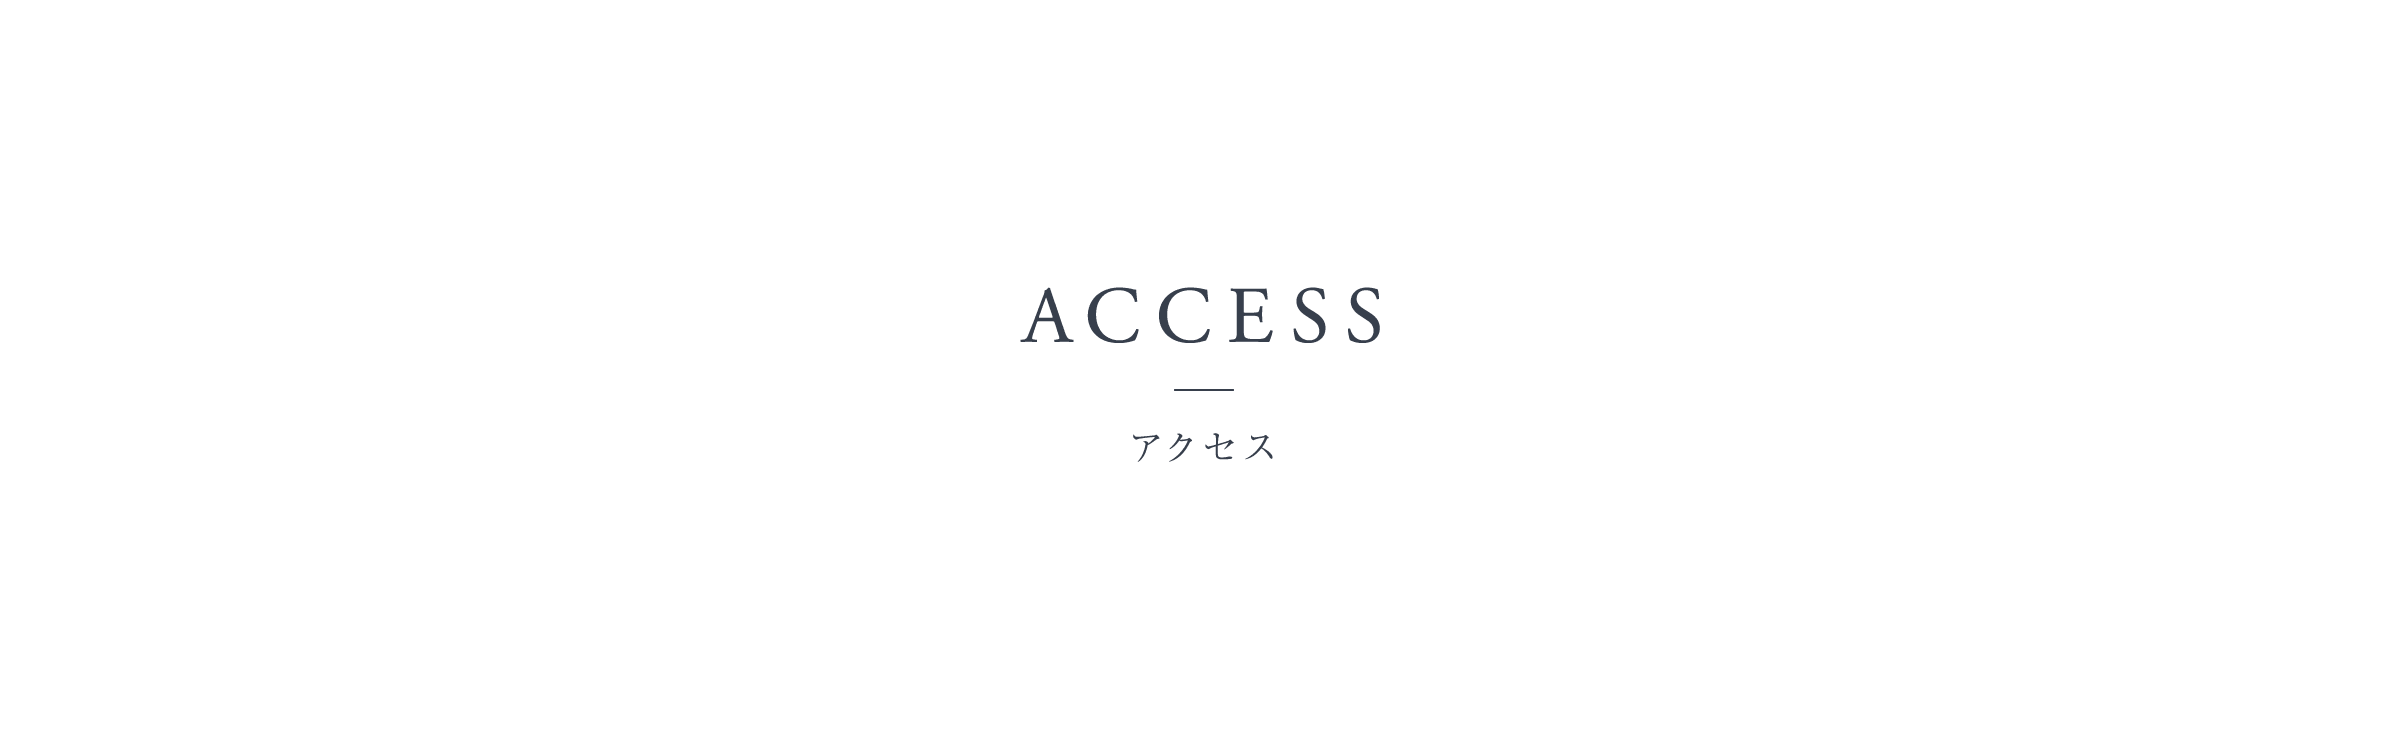 ACCESS - アクセス